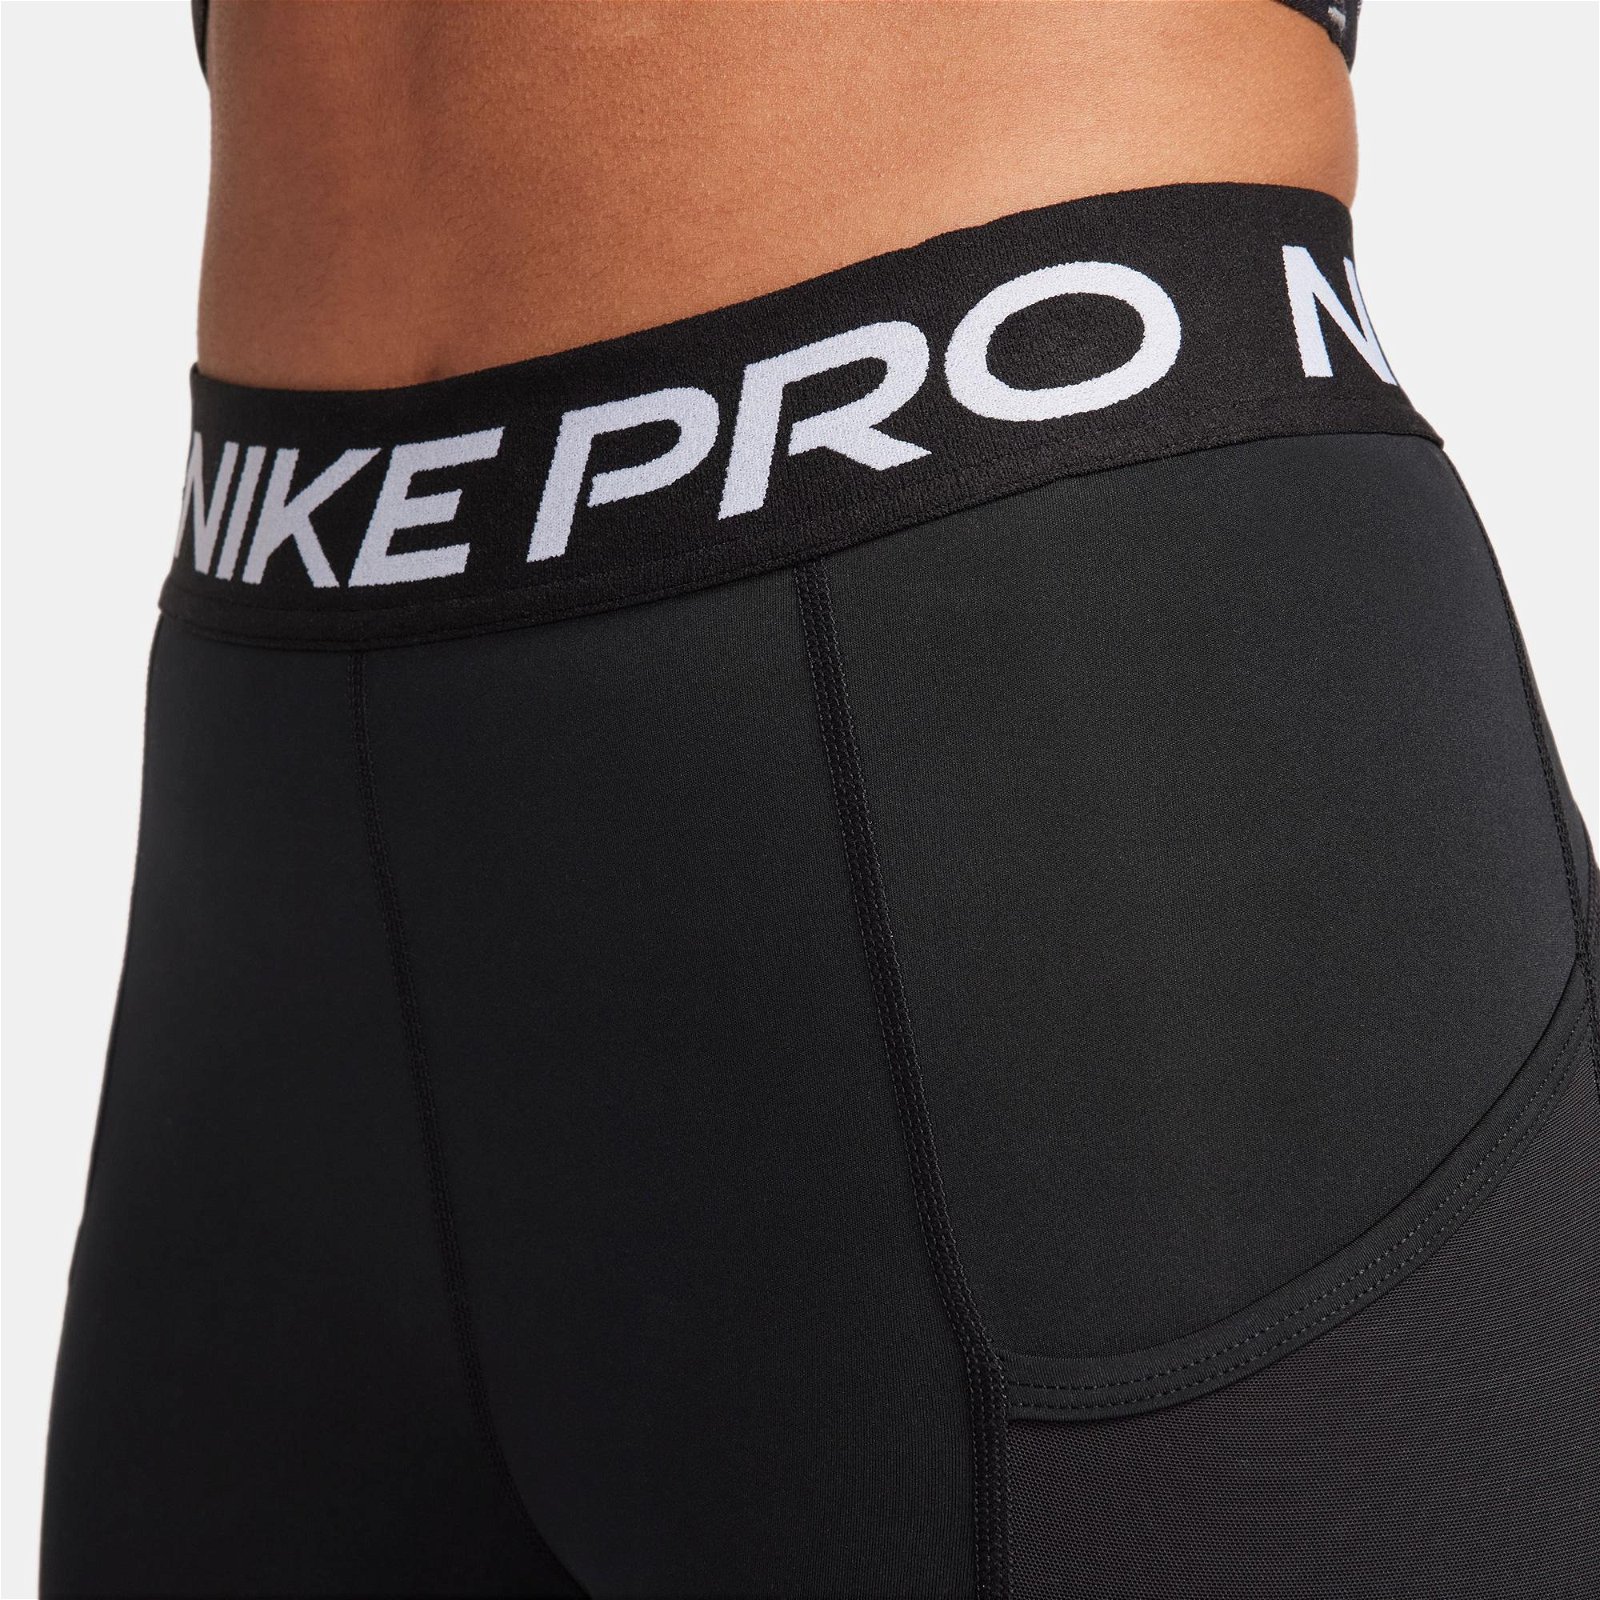 Nike Pro Dri-FIT 365 7/8 Kadın Siyah Tayt